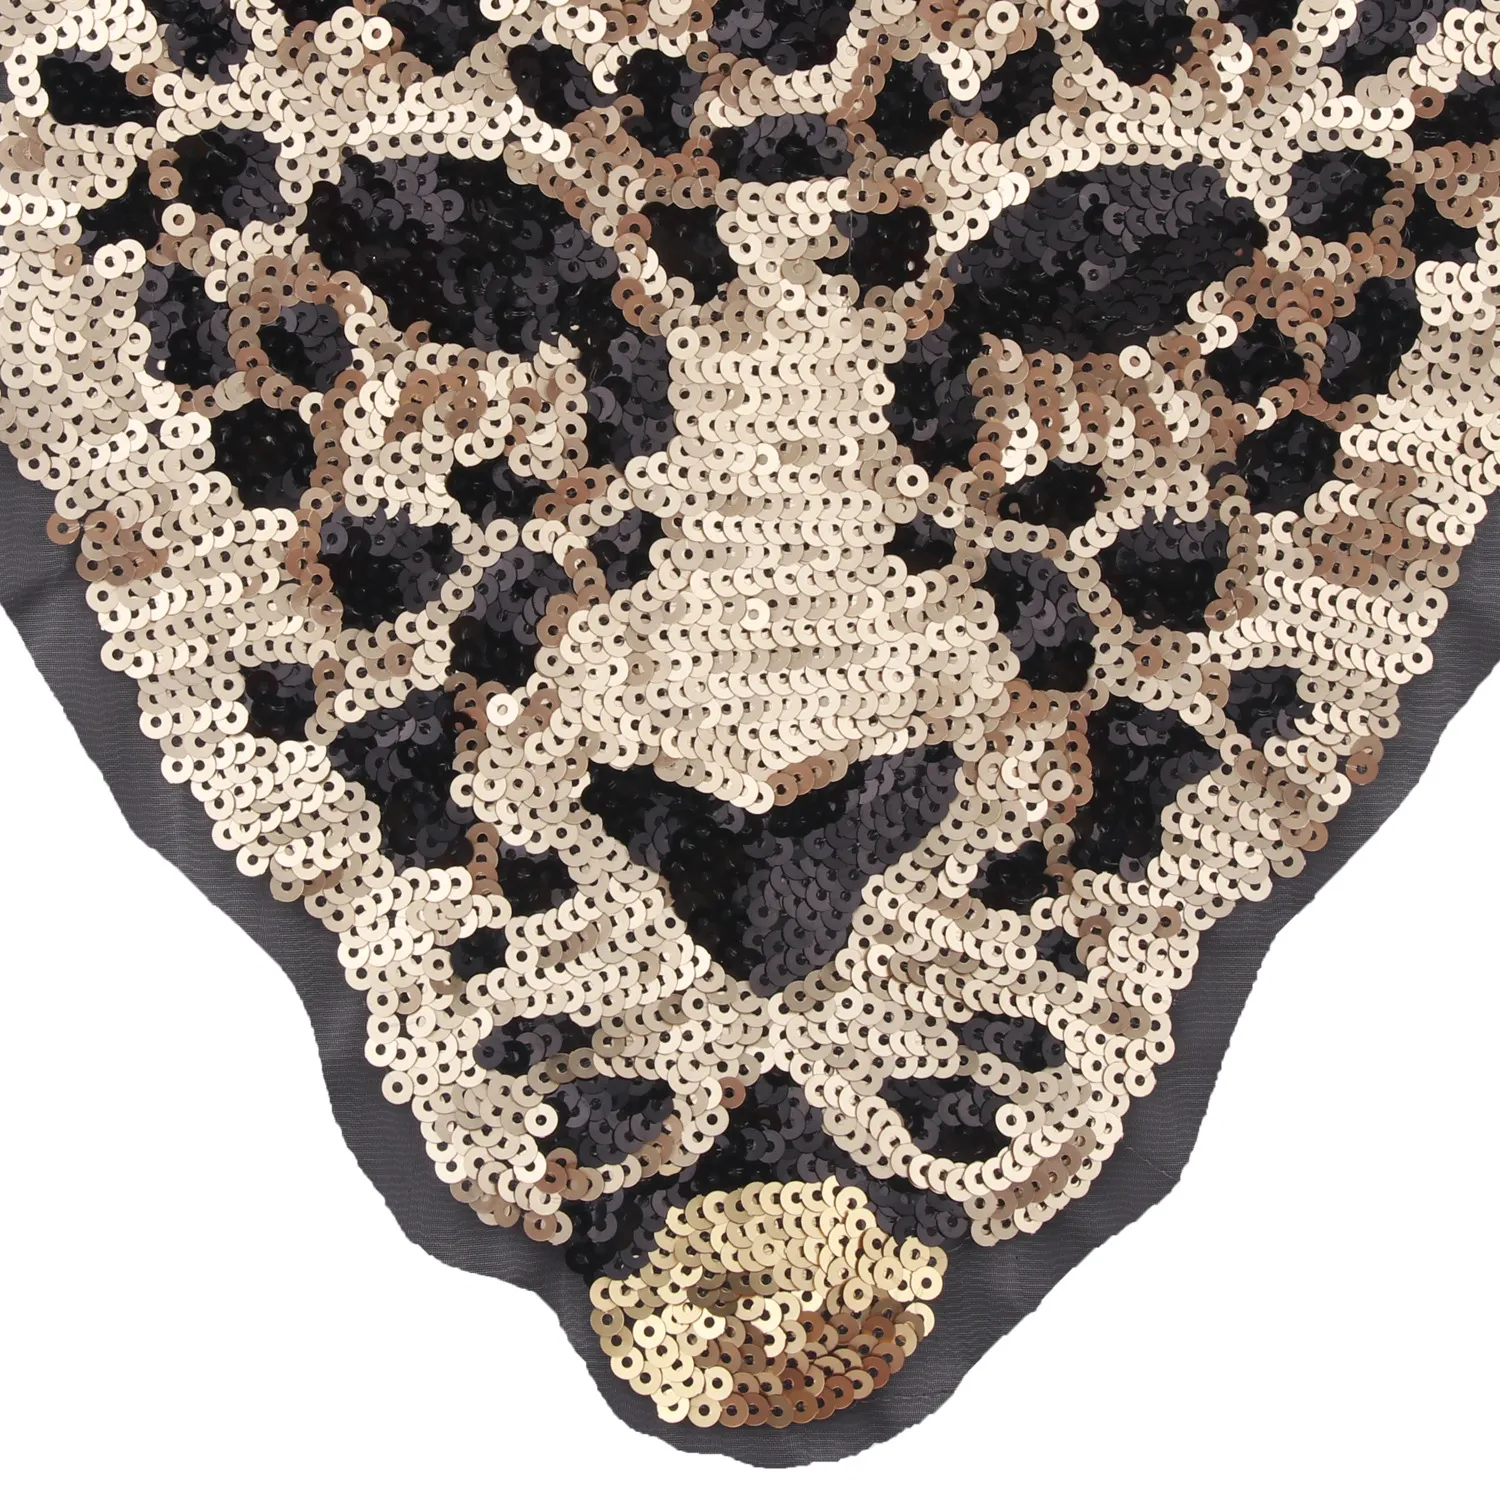 Neue Cartoon große Tier Pailletten Leopard Tiger Stickerei Tuch Patch Nähen auf Kleidung Zubehör Dekoration310J